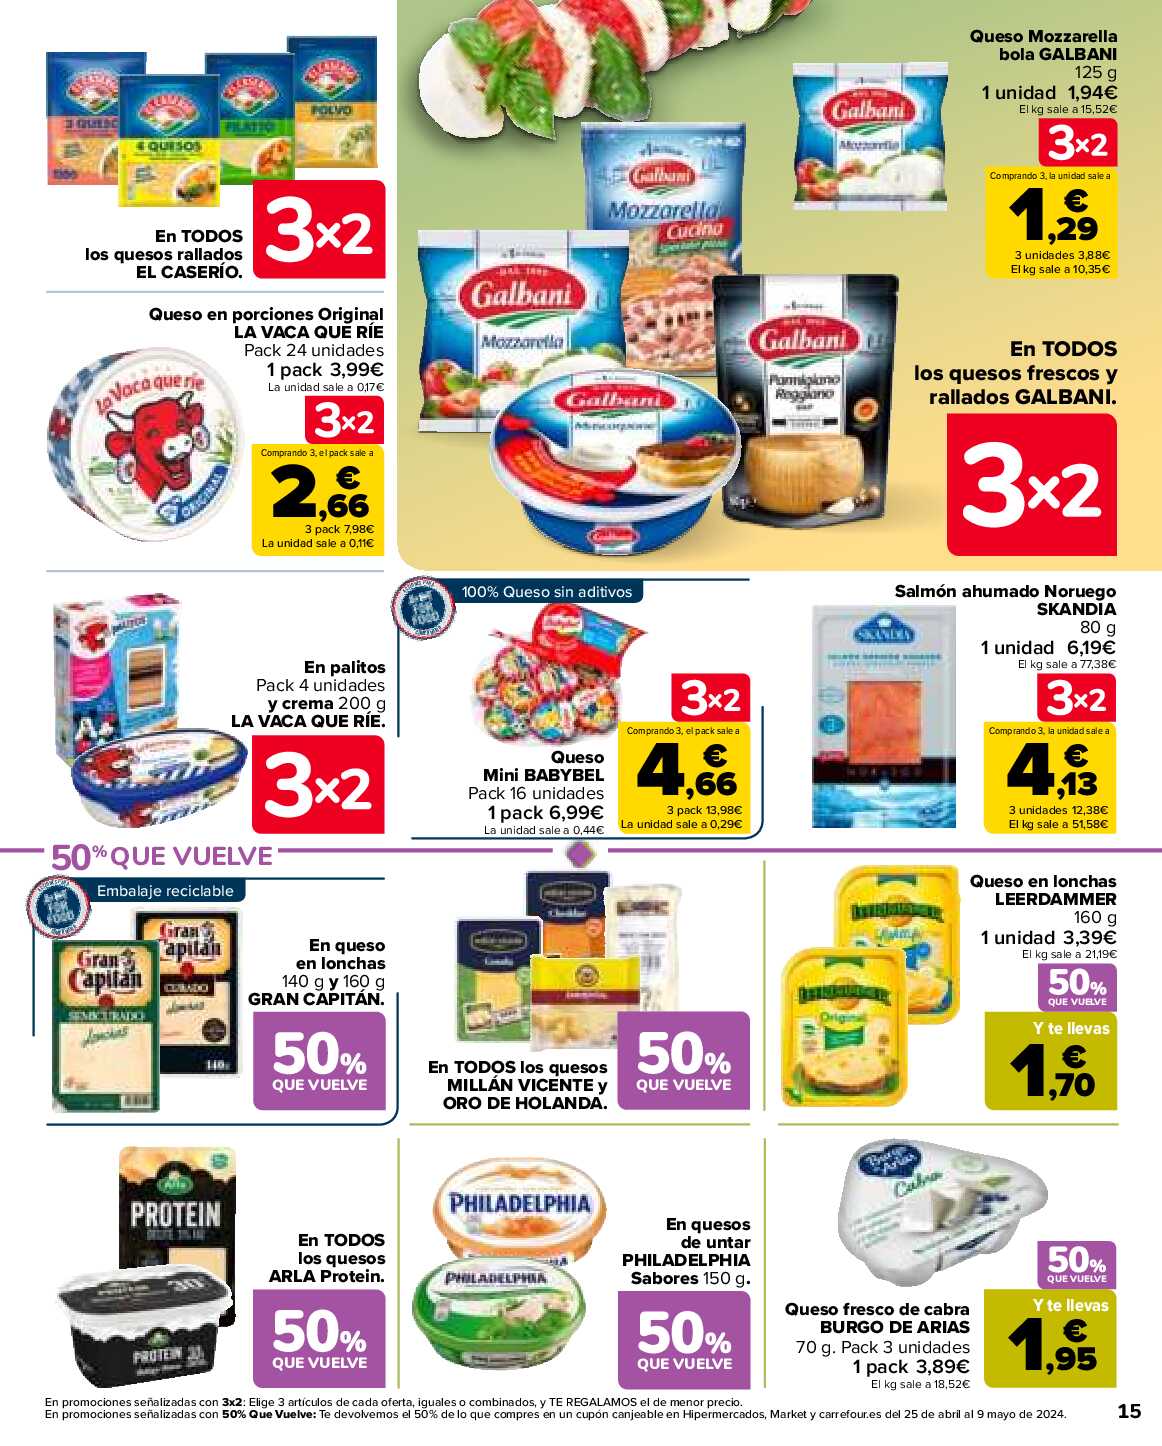 50% que vuelve Carrefour. Página 17